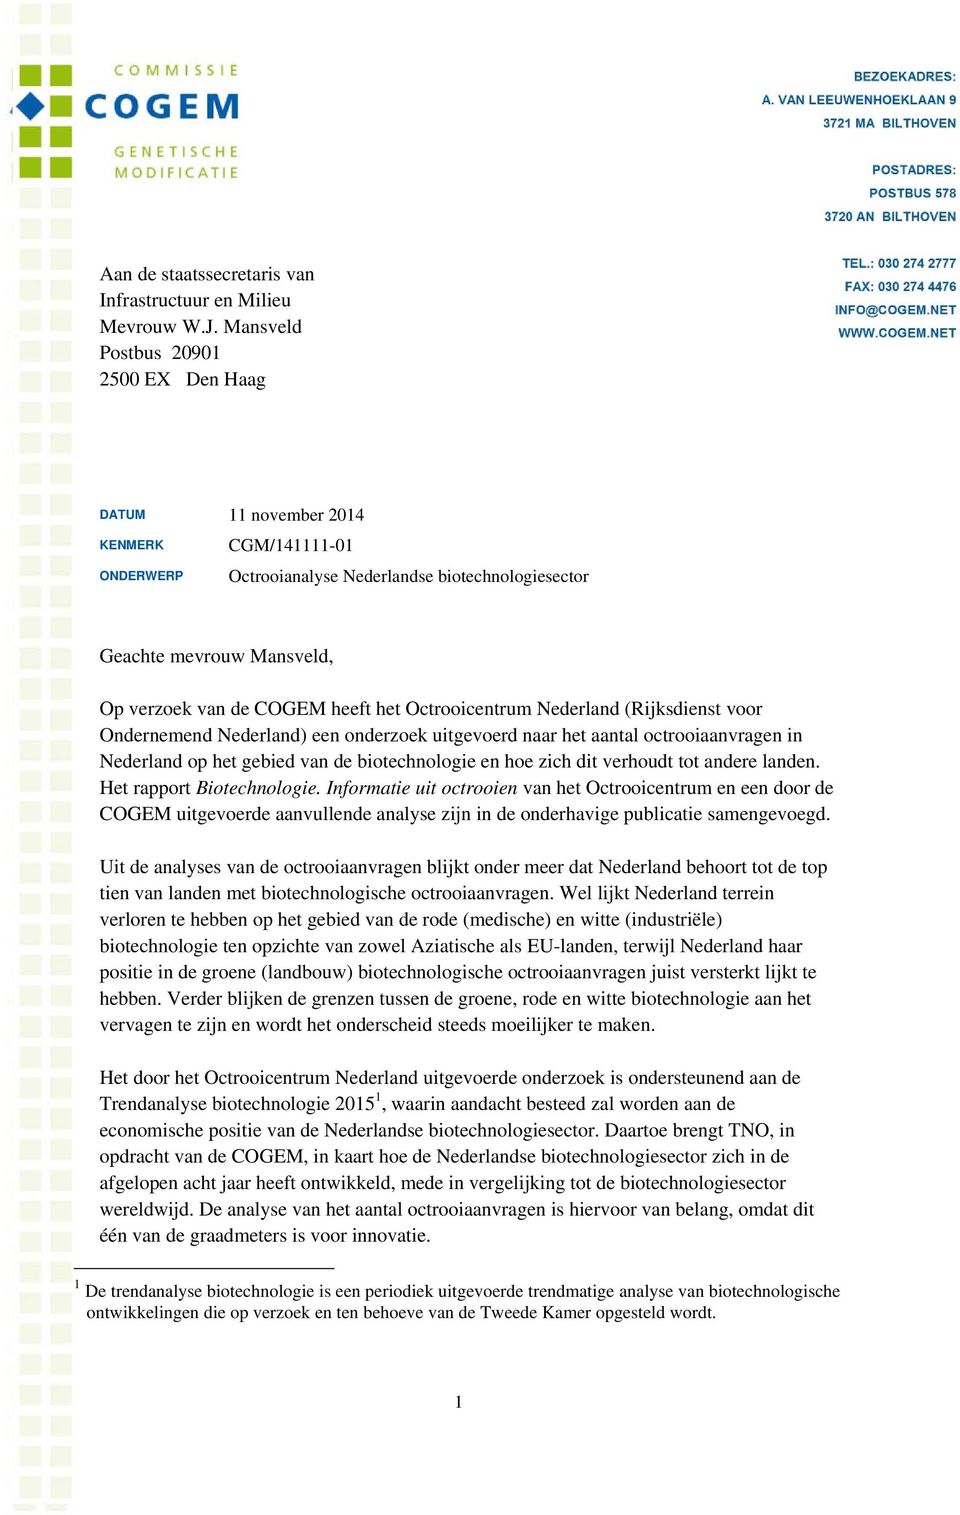 het Octrooicentrum Nederland (Rijksdienst voor Ondernemend Nederland) een onderzoek uitgevoerd naar het aantal octrooiaanvragen in Nederland op het gebied van de biotechnologie en hoe zich dit